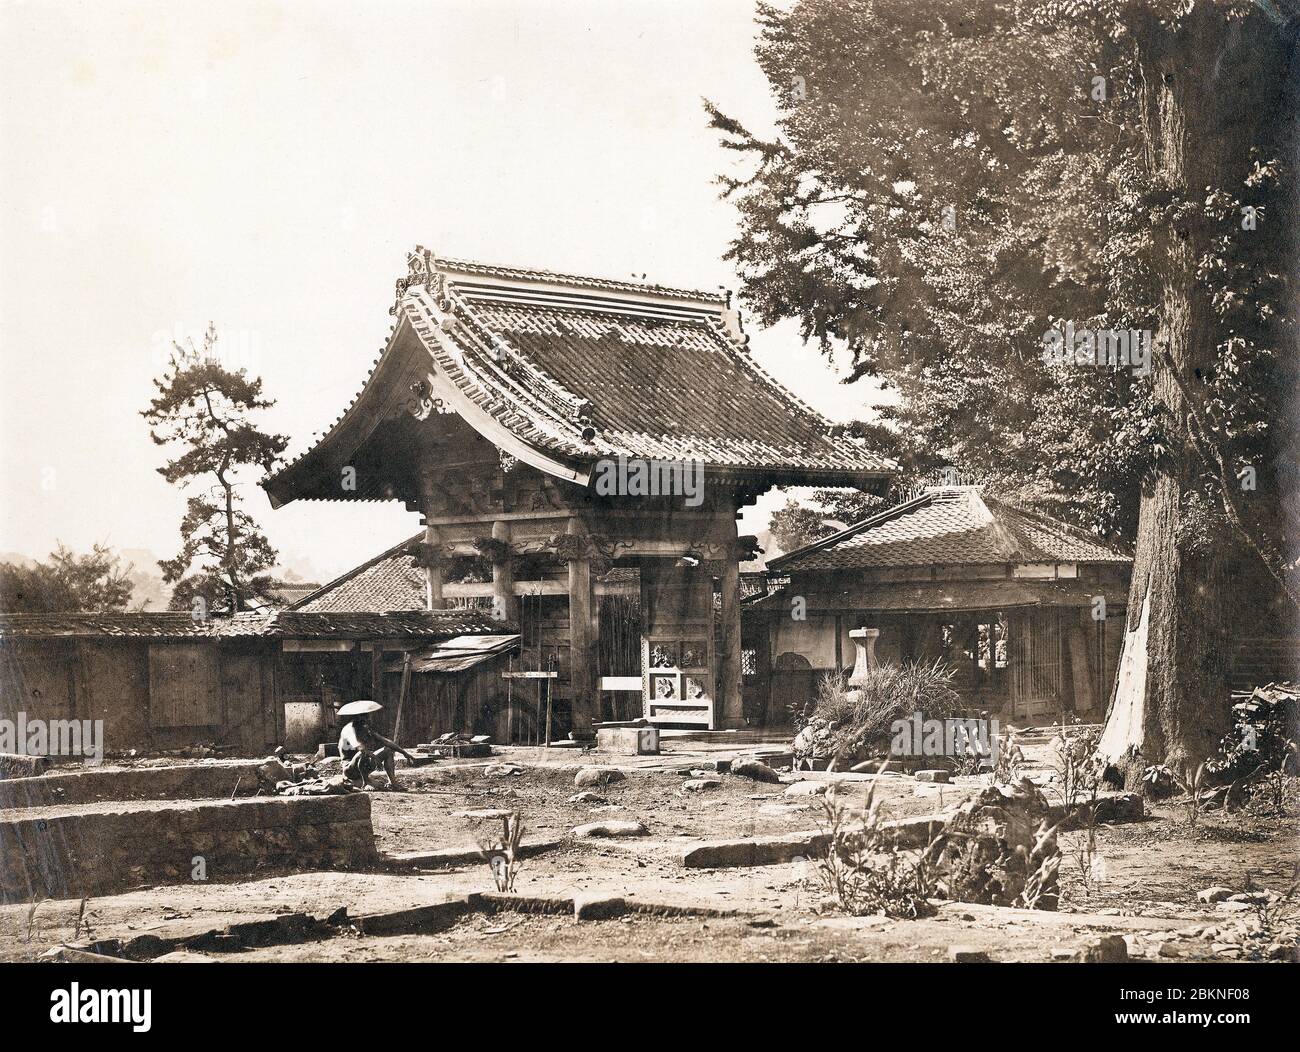 [ 1860 Giappone - bruciato la Legazione americana a Tokyo ] - bruciato la Legazione americana a Zenpukuji (善福寺) ad Azabu, Tokyo. Nel 1859 (Ansei 6), il tempio buddista divenne la sede della prima legazione americana a Edo. Il 24 maggio 1863 (Bunkyu 3), diversi edifici del tempio furono bruciati dai samurai anti-occidentali del Mito Han. Ciò ha spinto il ministro degli Stati Uniti in Giappone, Robert Hewson Pruyn (1815–1882), successore del console statunitense Townsend Harris (1804–1878), a trasferirsi a Yokohama. foto di albume vintage del xix secolo. Foto Stock